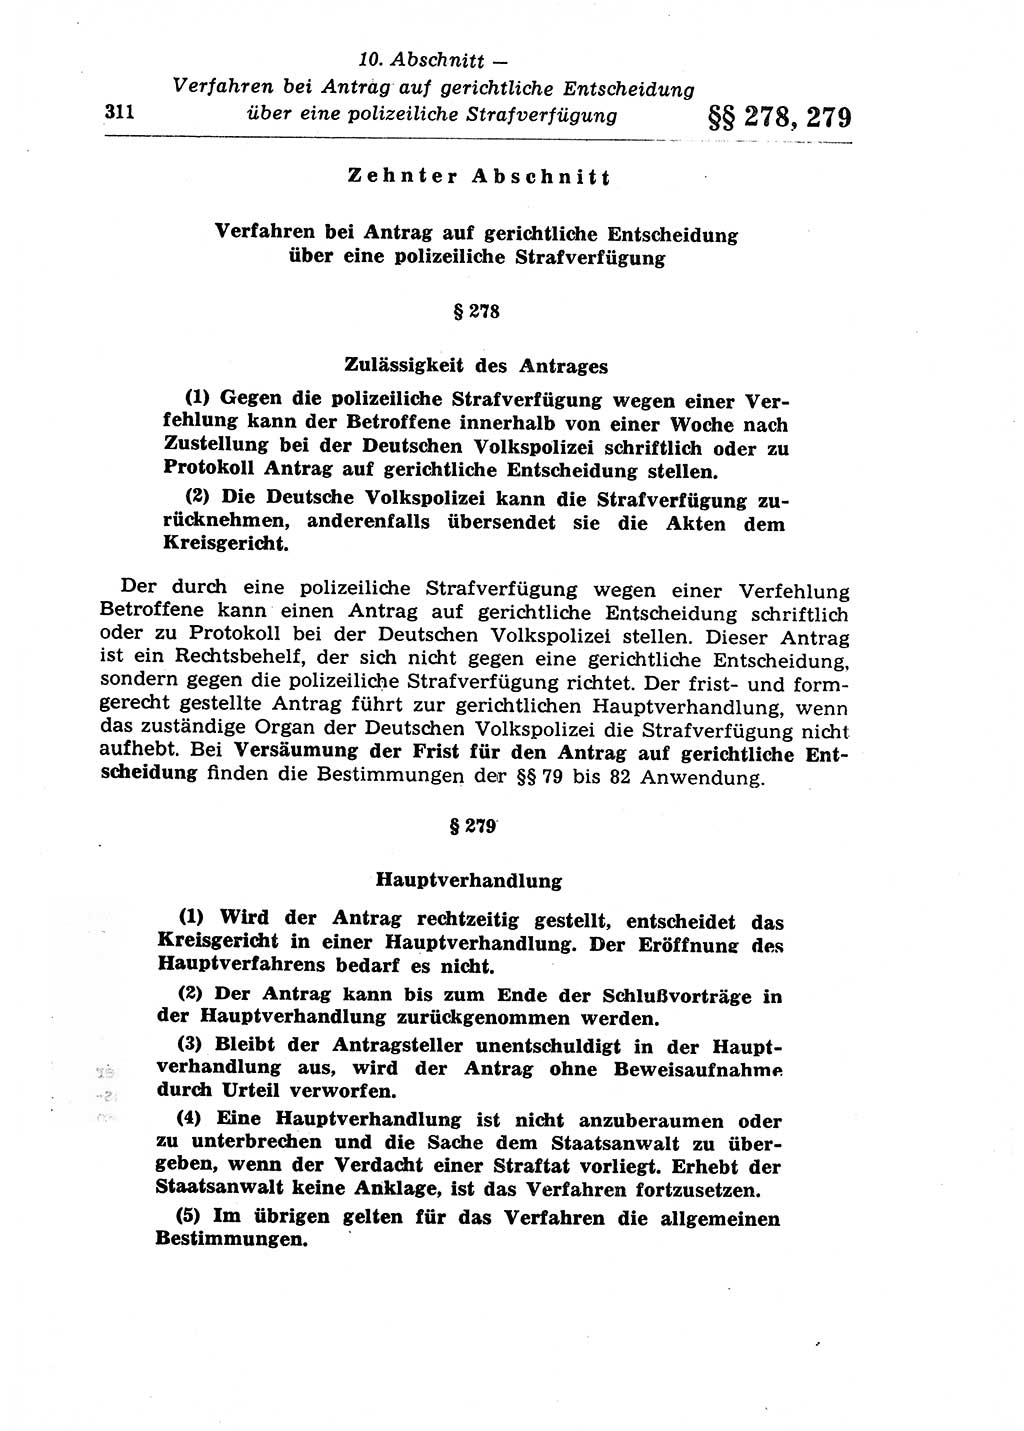 Strafprozeßrecht der DDR (Deutsche Demokratische Republik), Lehrkommentar zur Strafprozeßordnung (StPO) 1968, Seite 311 (Strafprozeßr. DDR Lehrkomm. StPO 19688, S. 311)